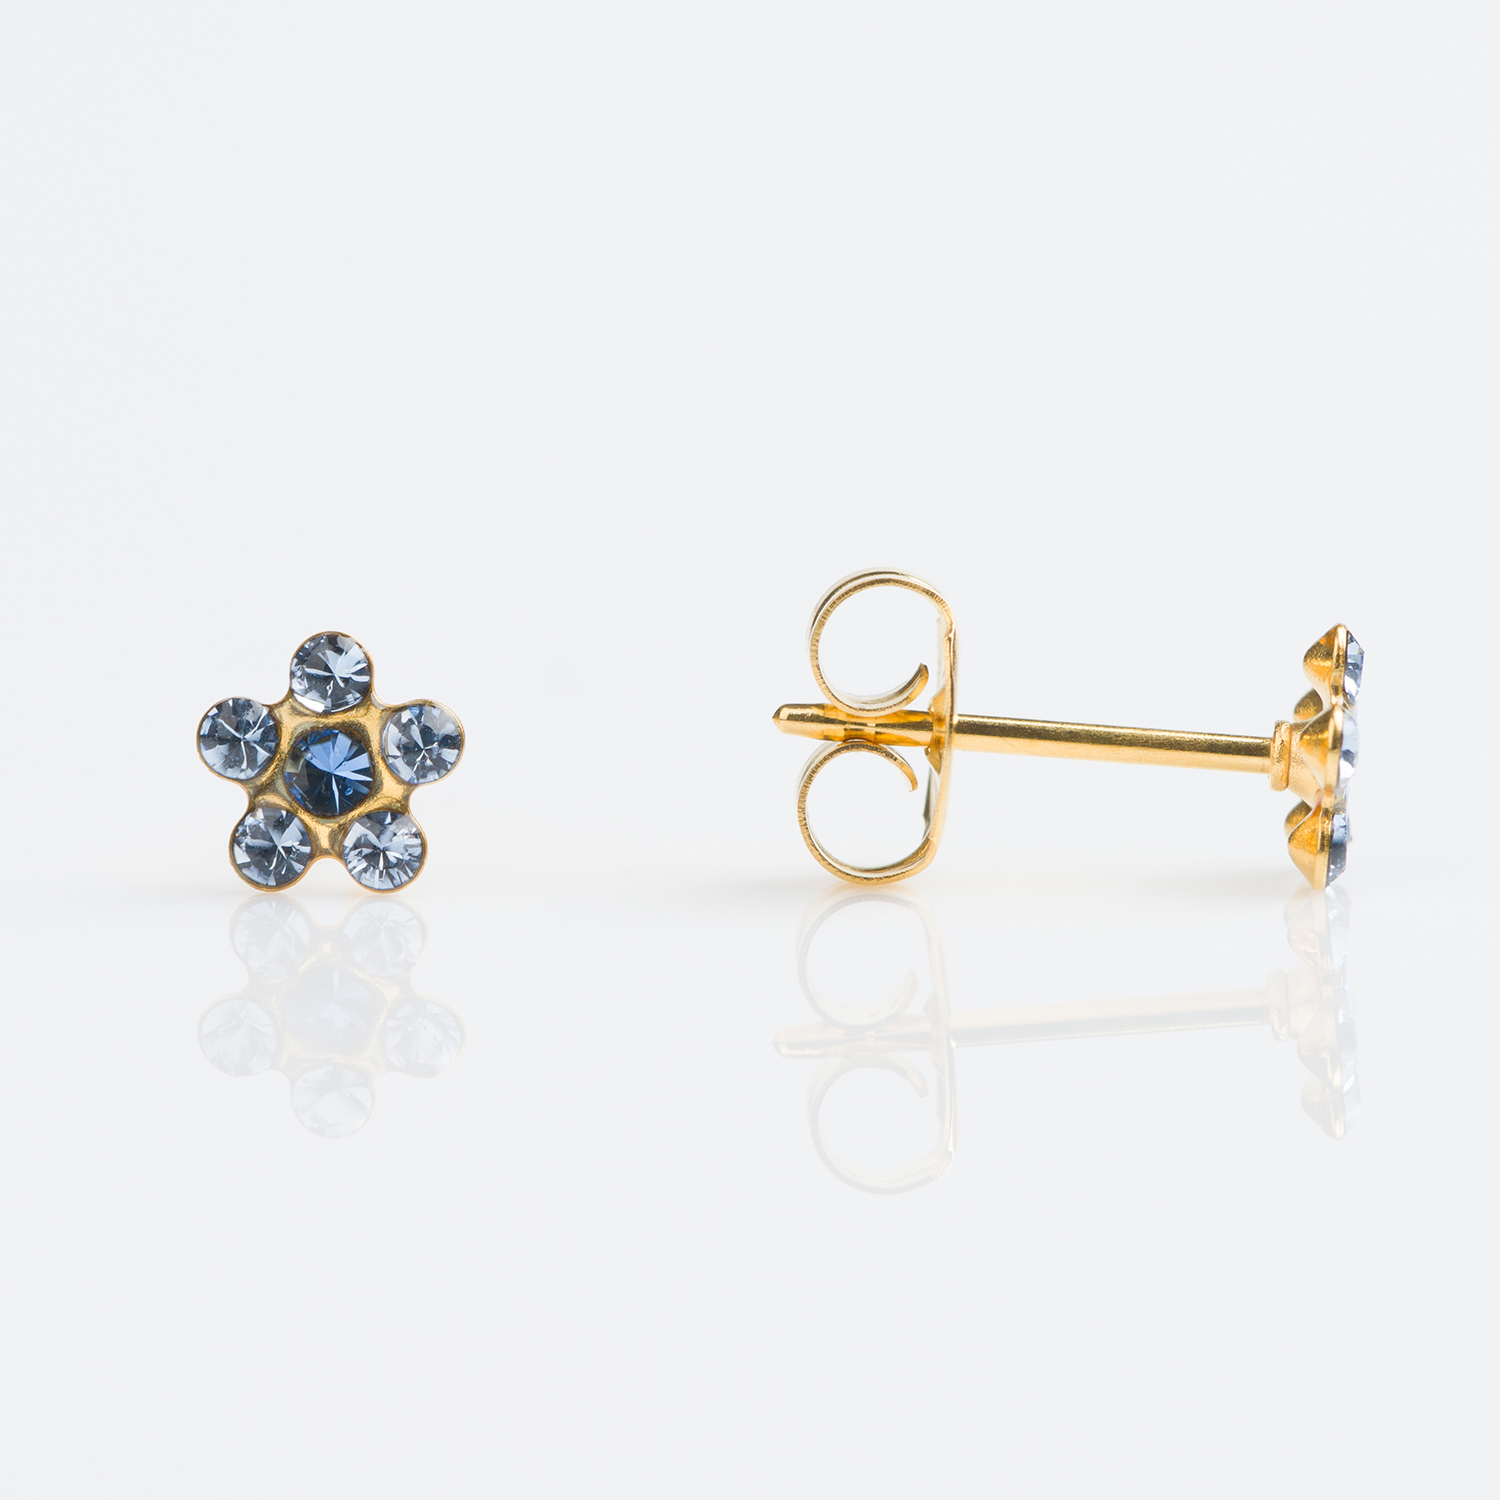 TT-6399 – Studex Tiny Tips Gold Plated Daisy Light Sapphire September Sapphire Stud Earrings